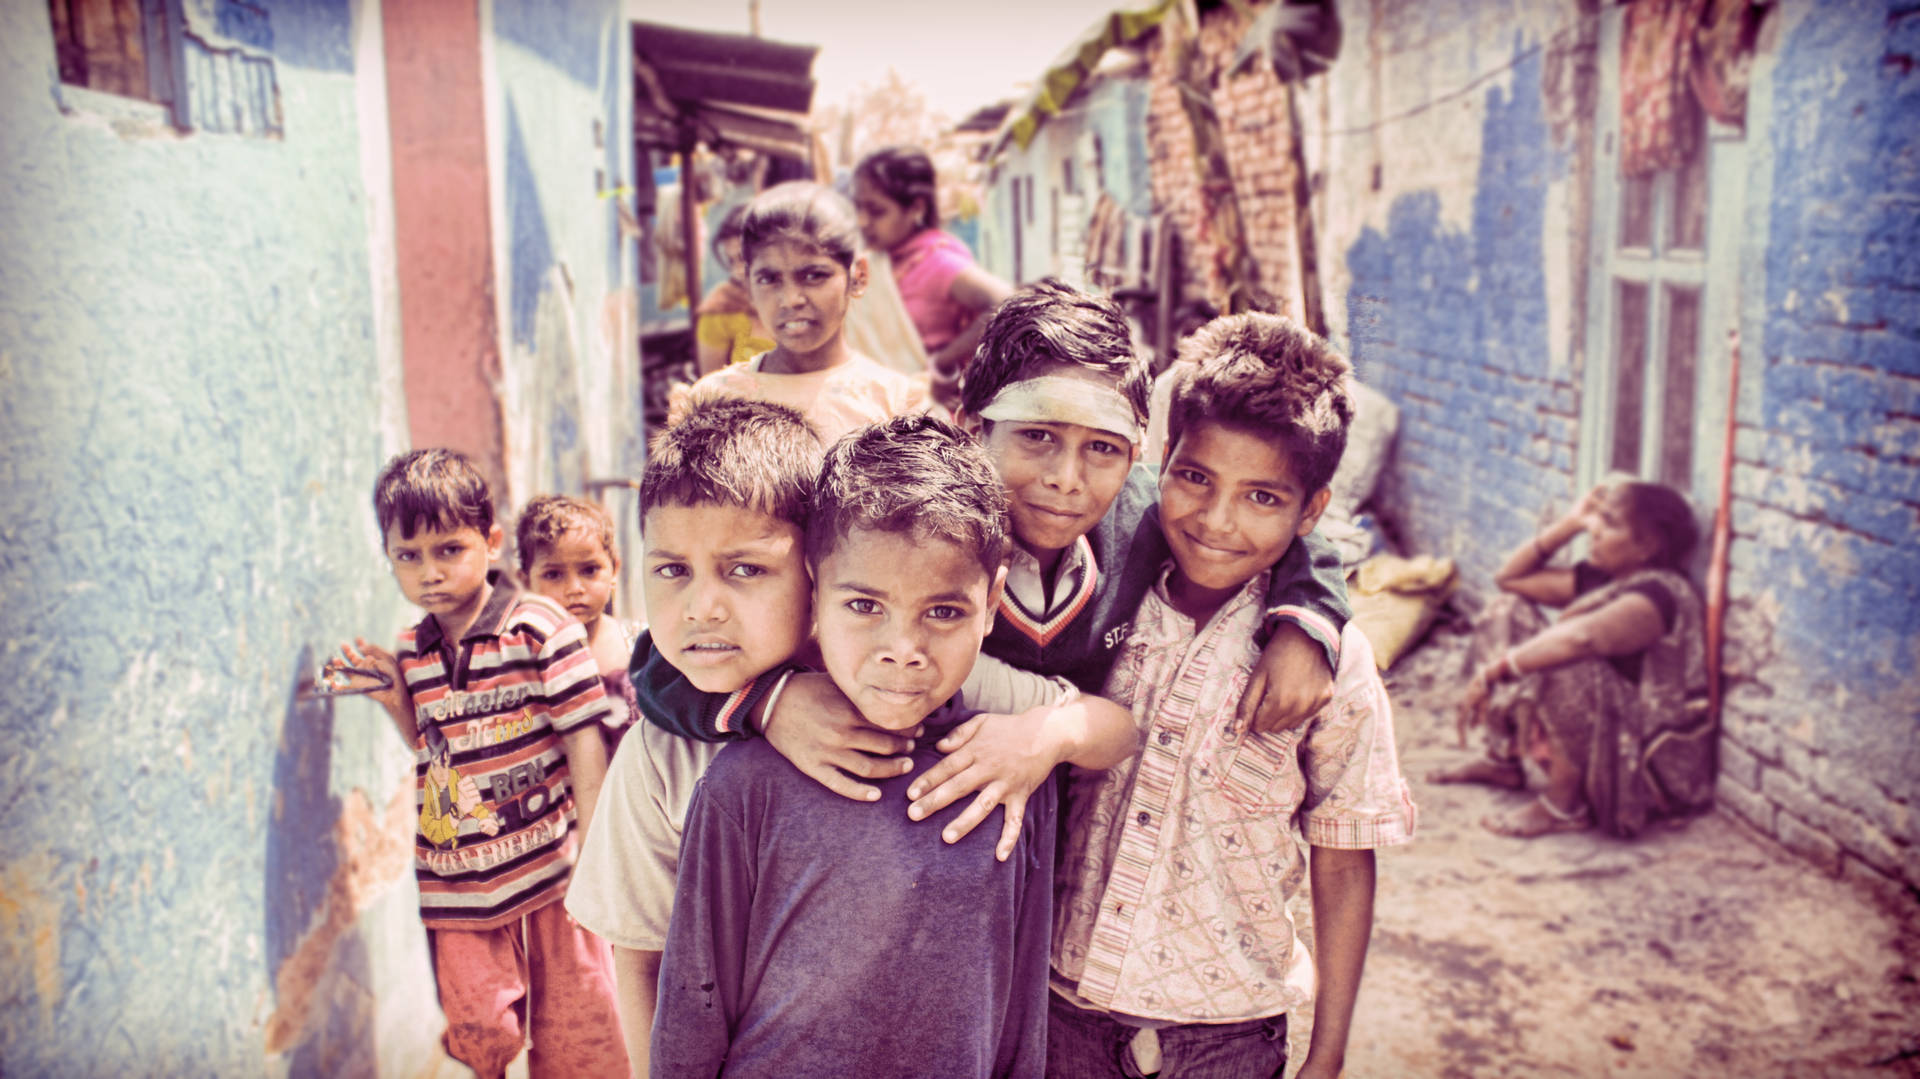 Gruppe af drenge i landsby scener Wallpaper